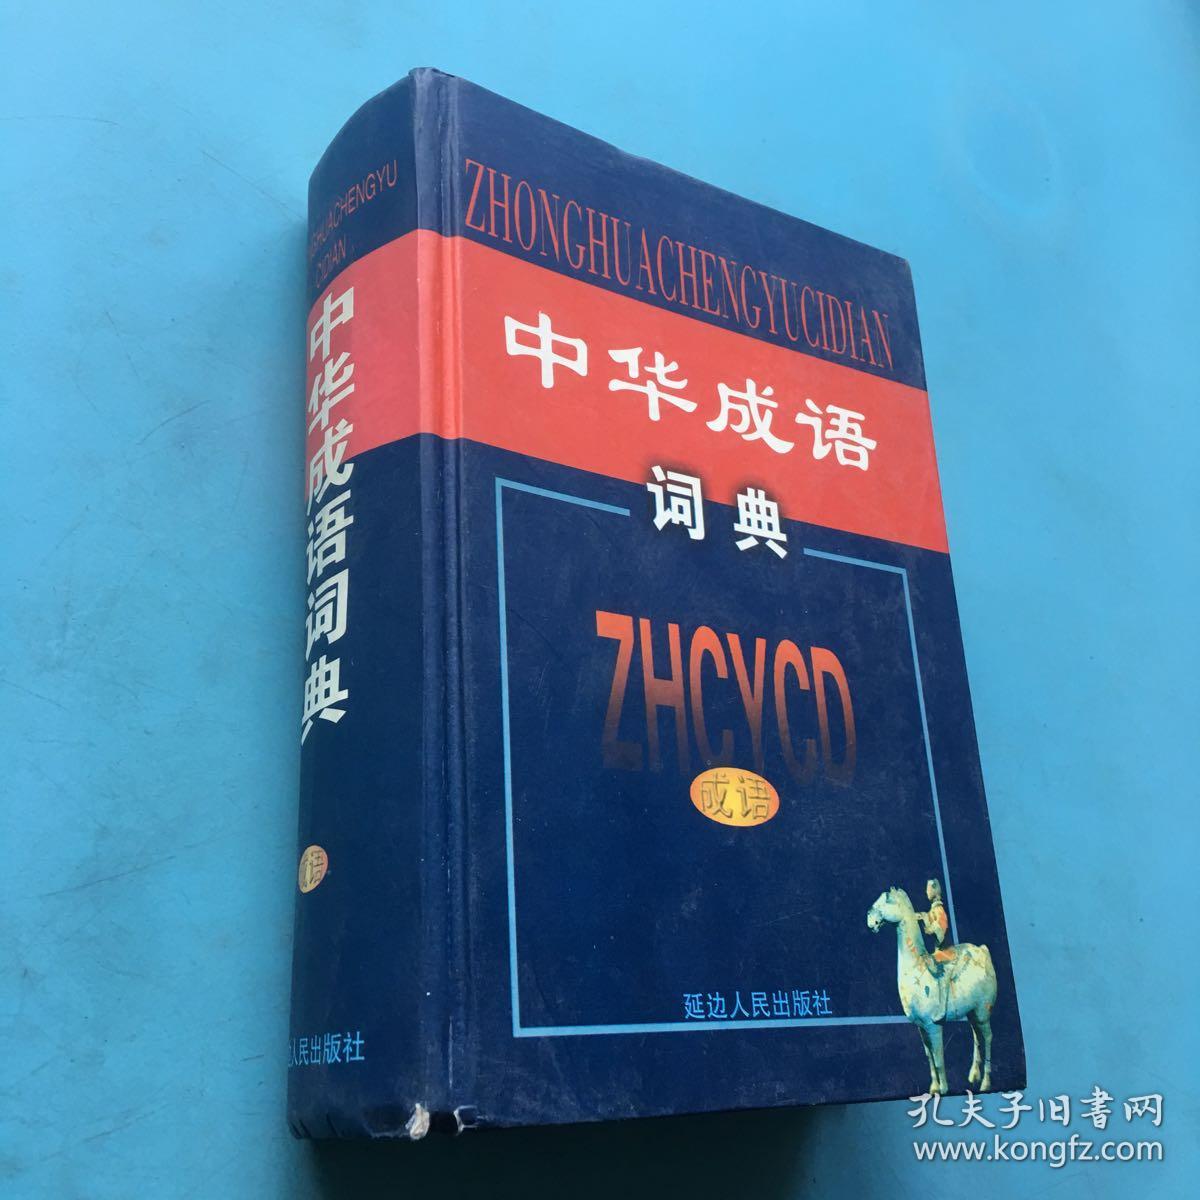 中华成语词典